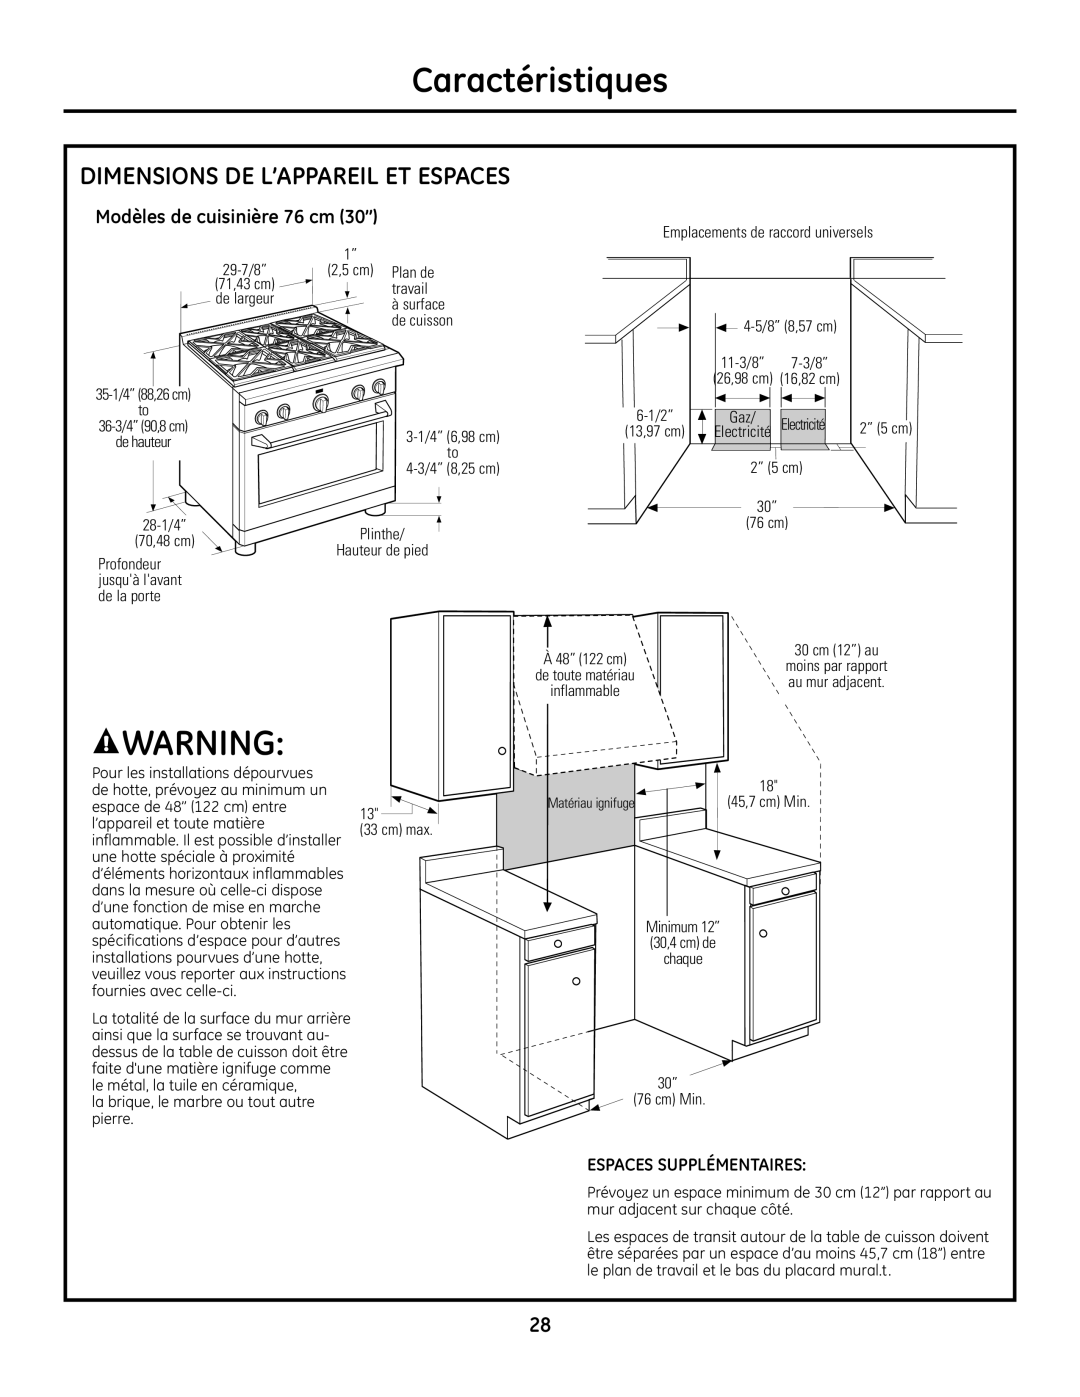 GE Monogram Range Dimensions De L’Appareil Et Espaces, Modèles de cuisinière 76 cm 30’’, Caractéristiques 